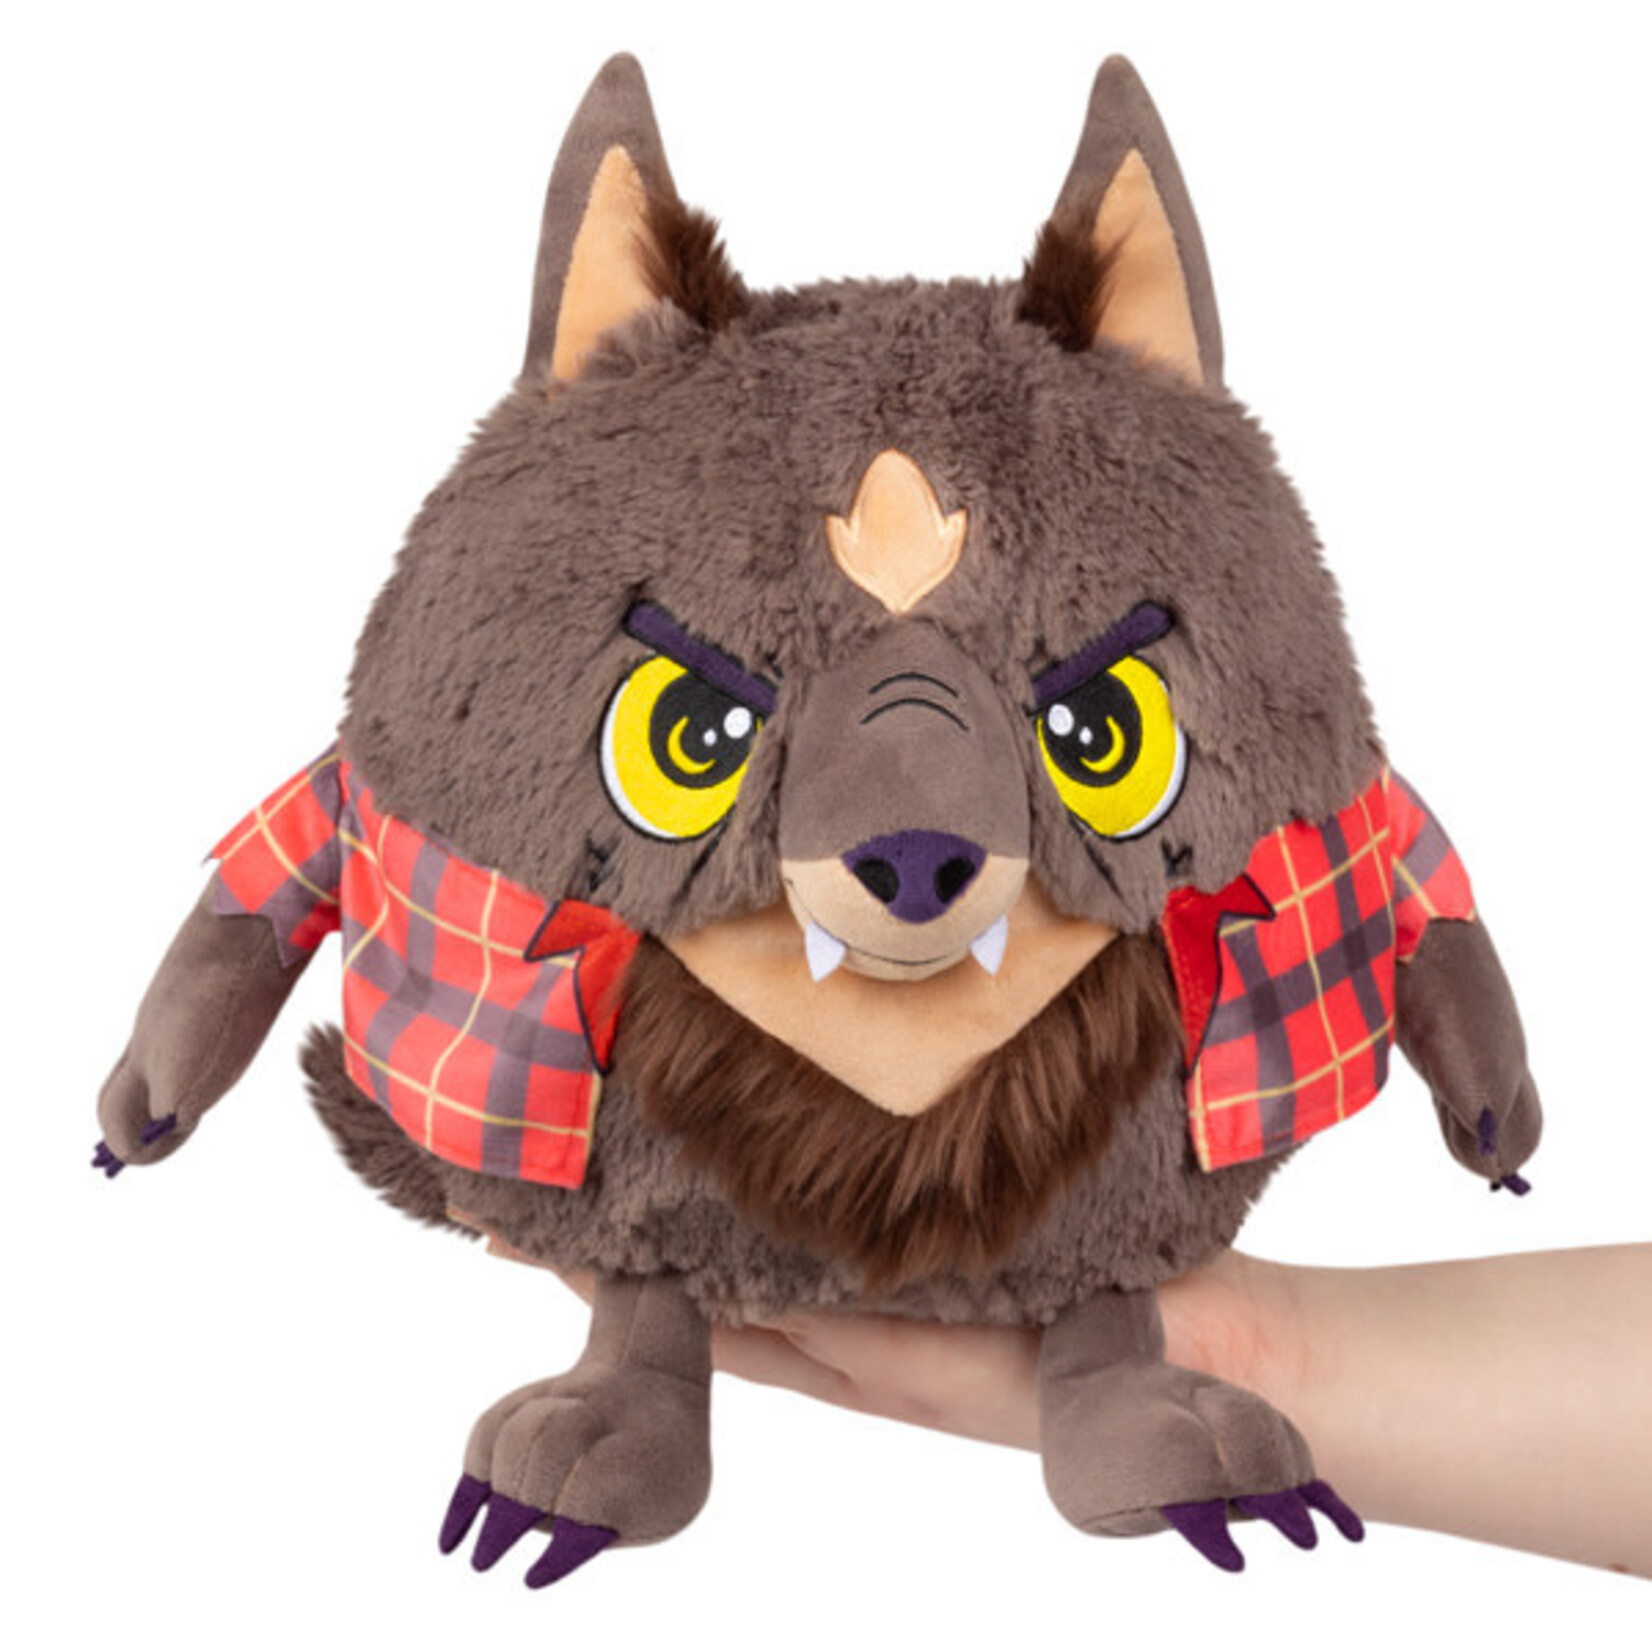 squishable Mini Werewolf Squishable 9"